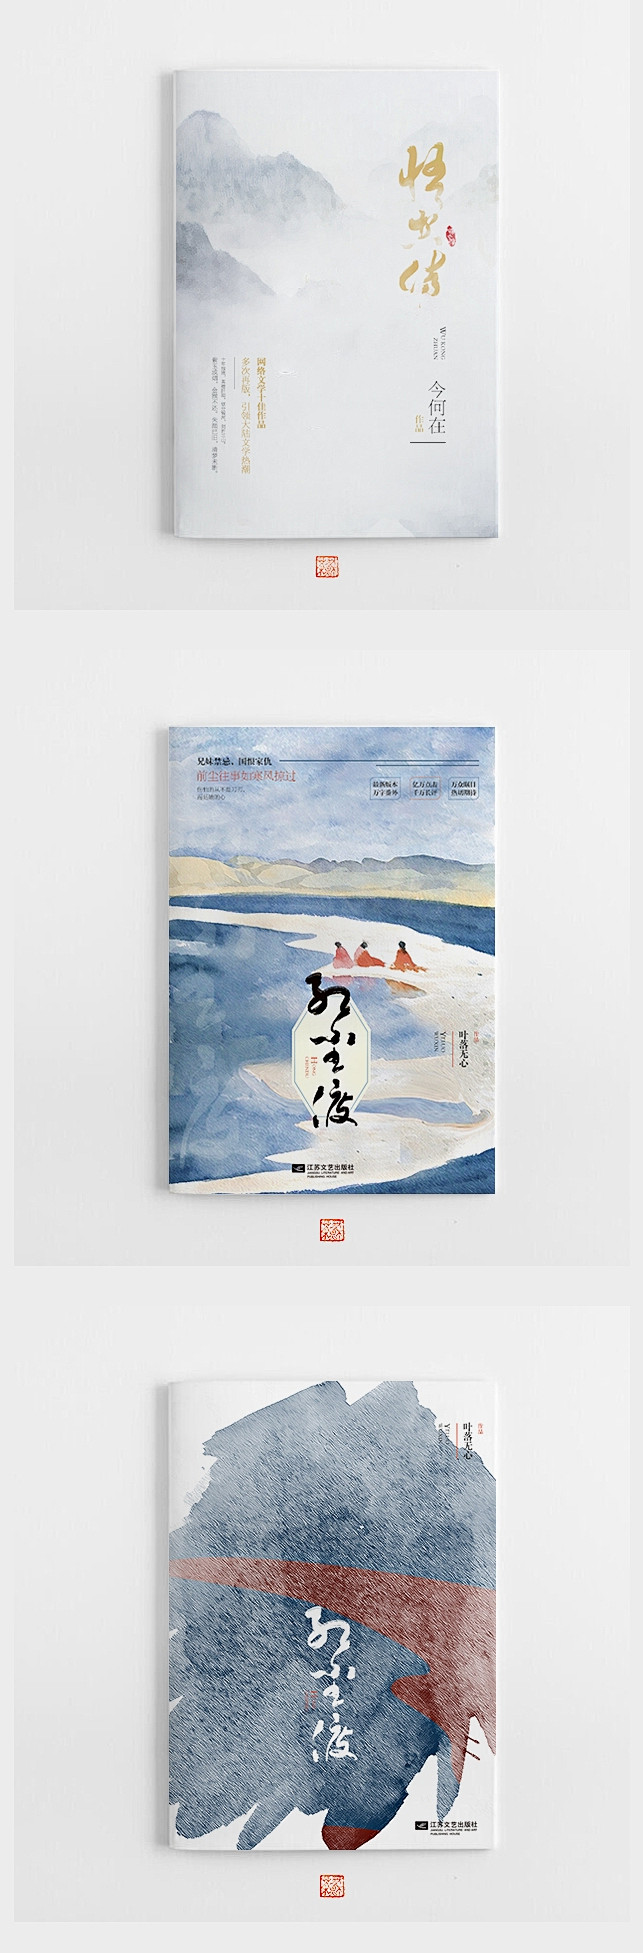 国外创意书籍封面设计 中国风 古典 画册...